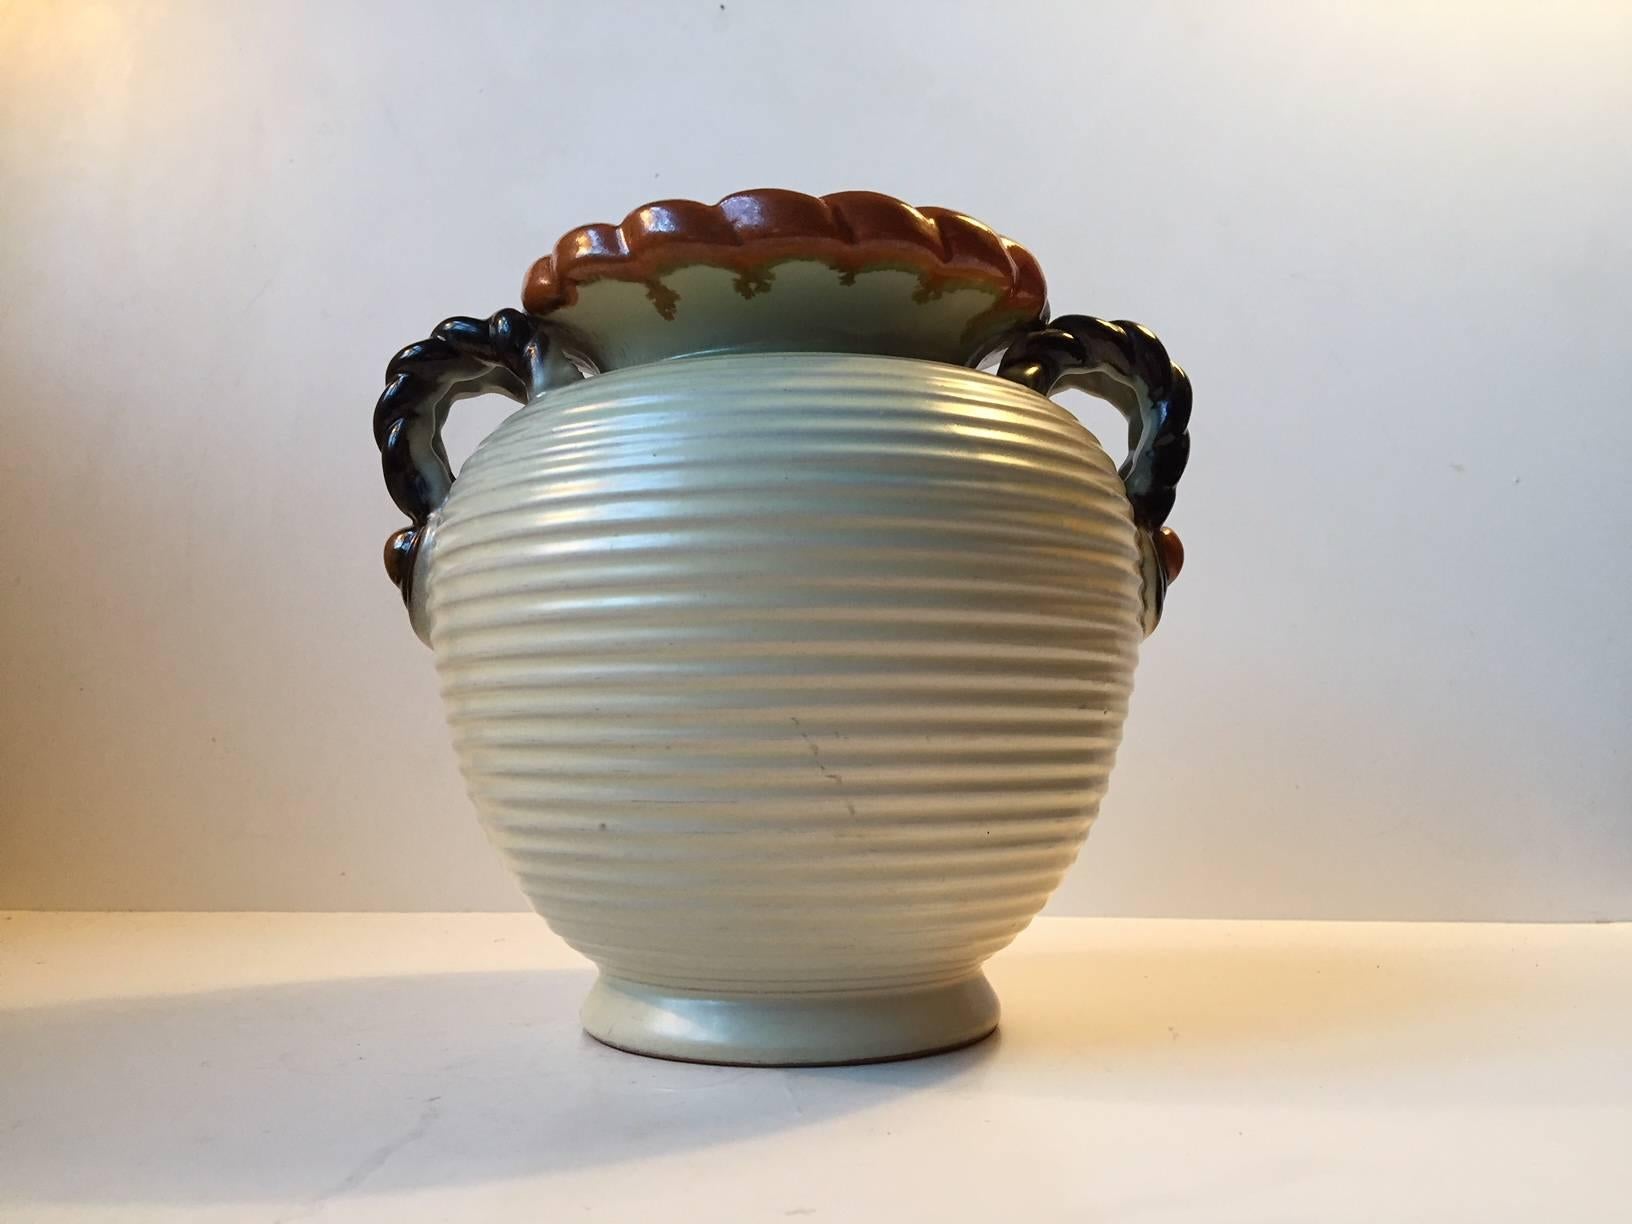 Glazed Danish Art Deco Pottery Vases by Knabstrup, 1930s, Set of 2